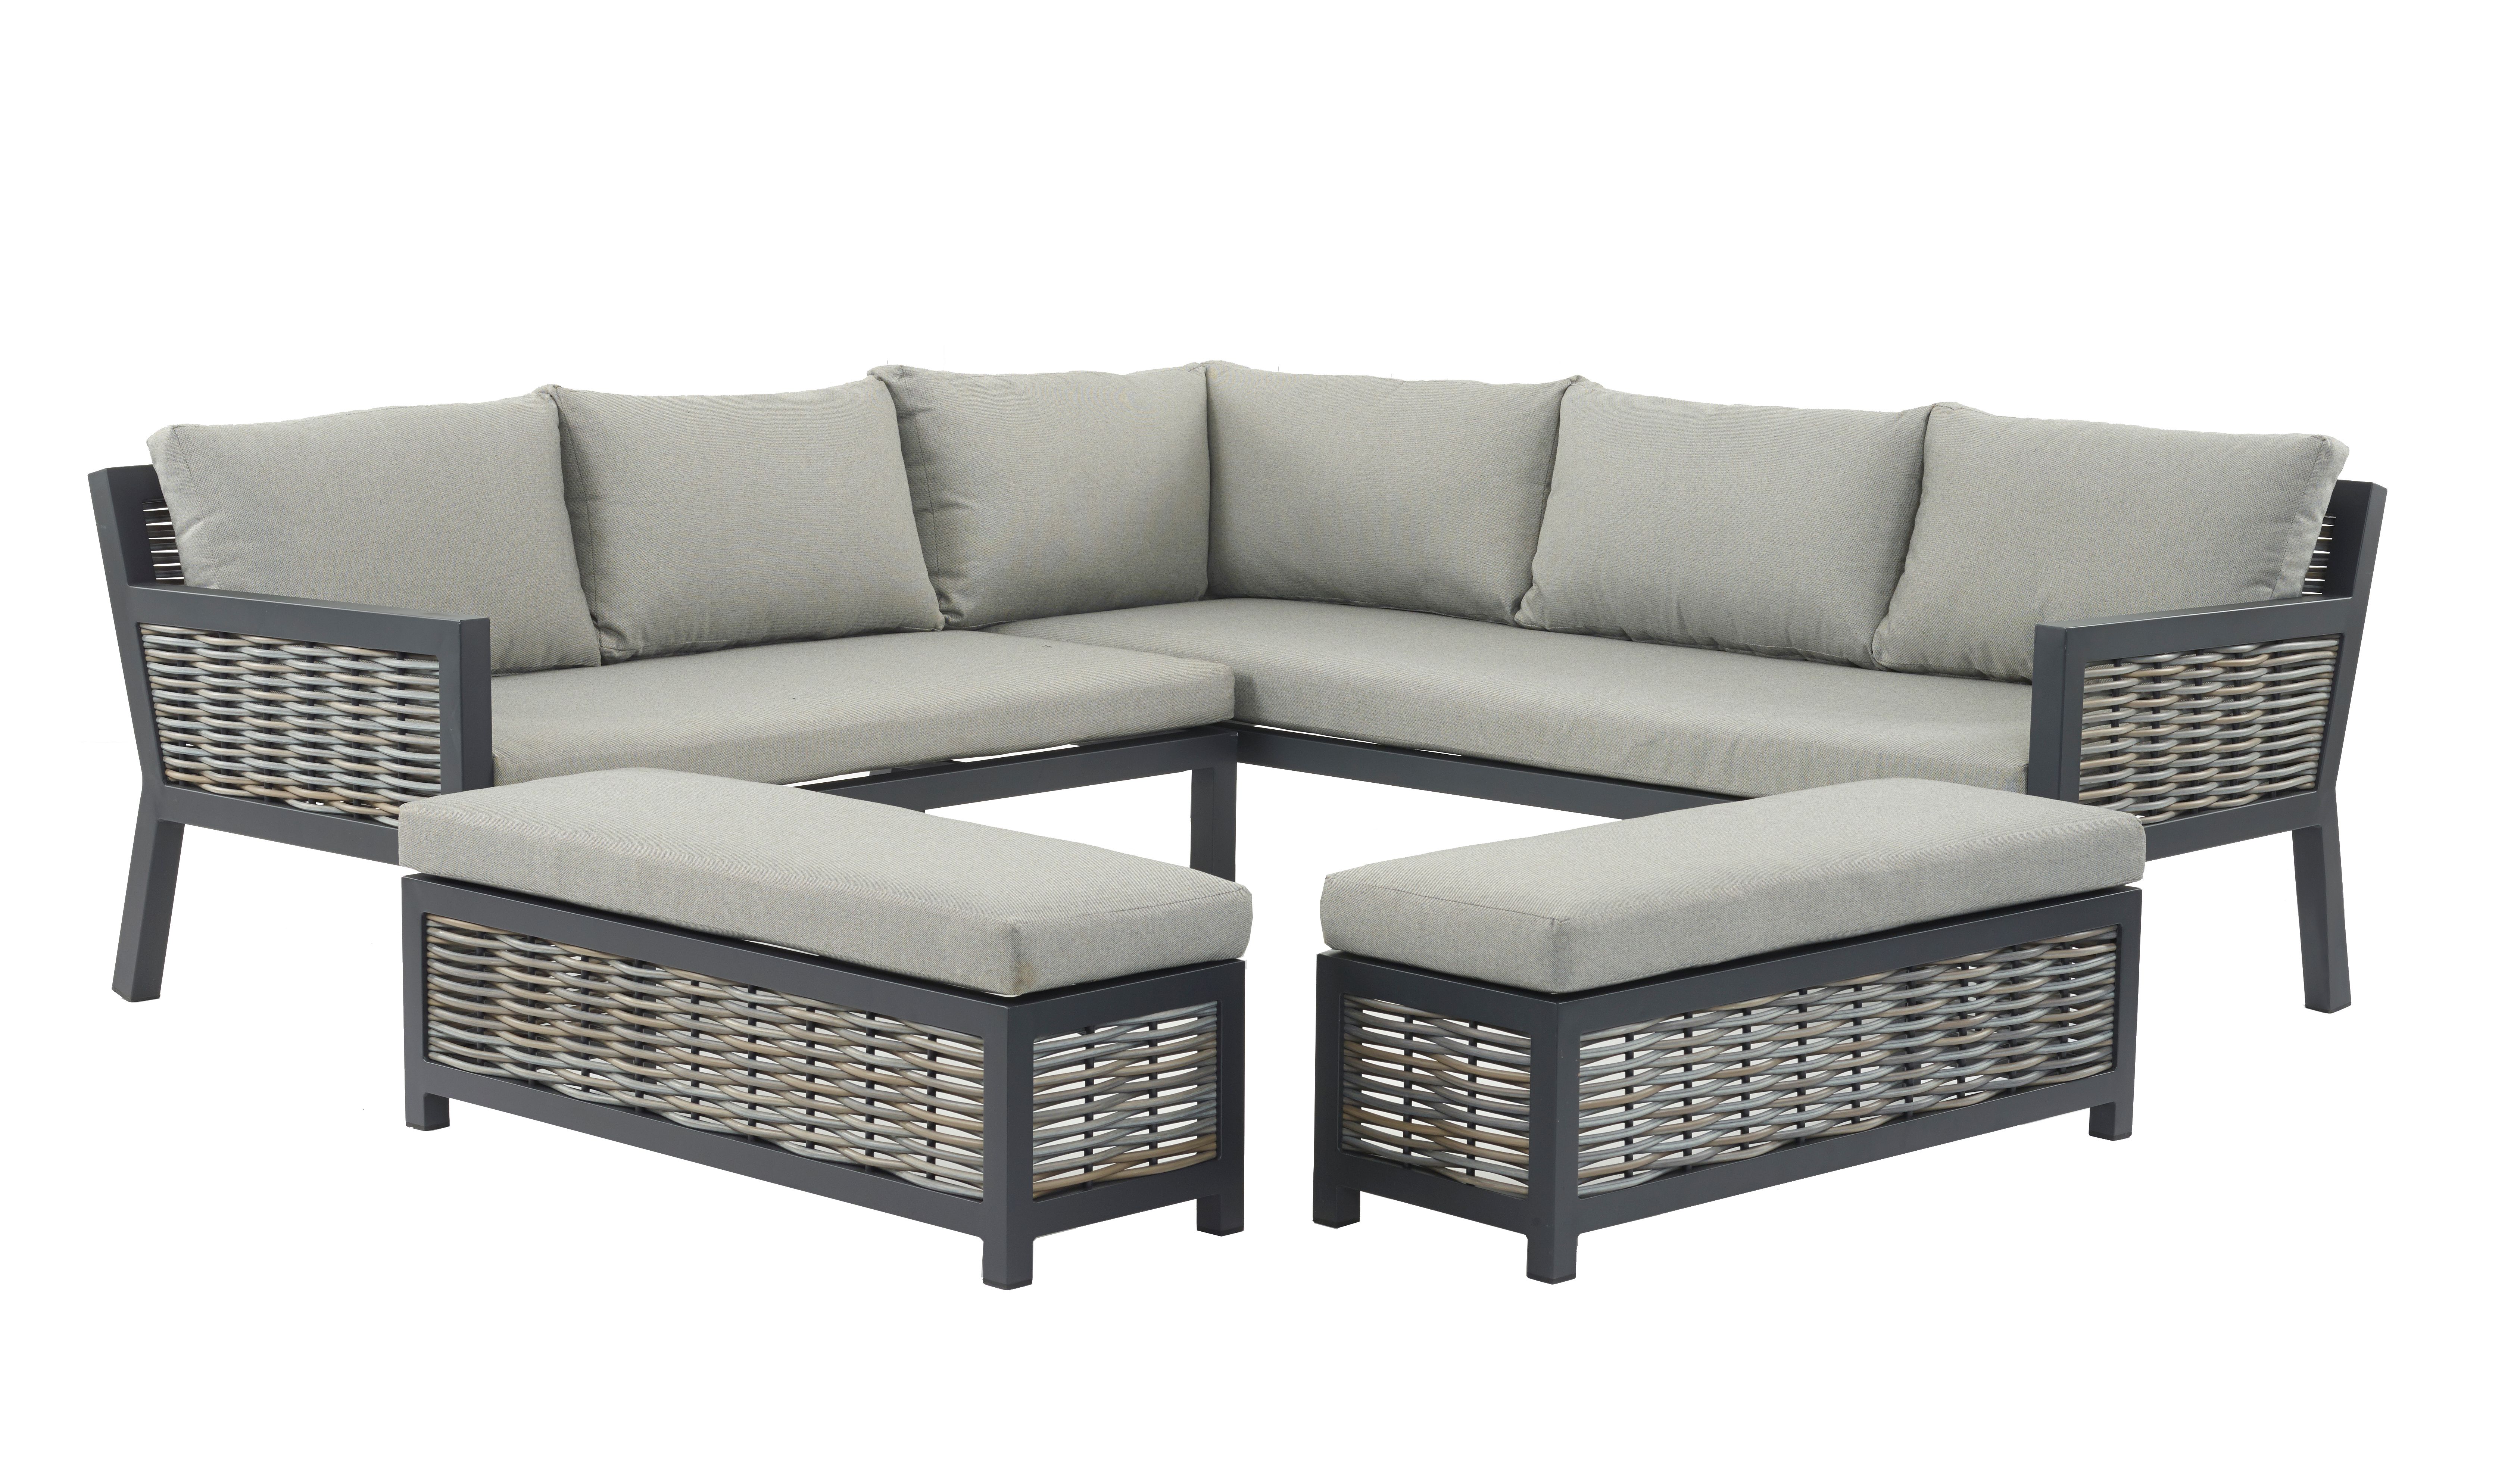 Set A402 Portofino Deluxe Wicker Square Modular Sofa with 2 Benches